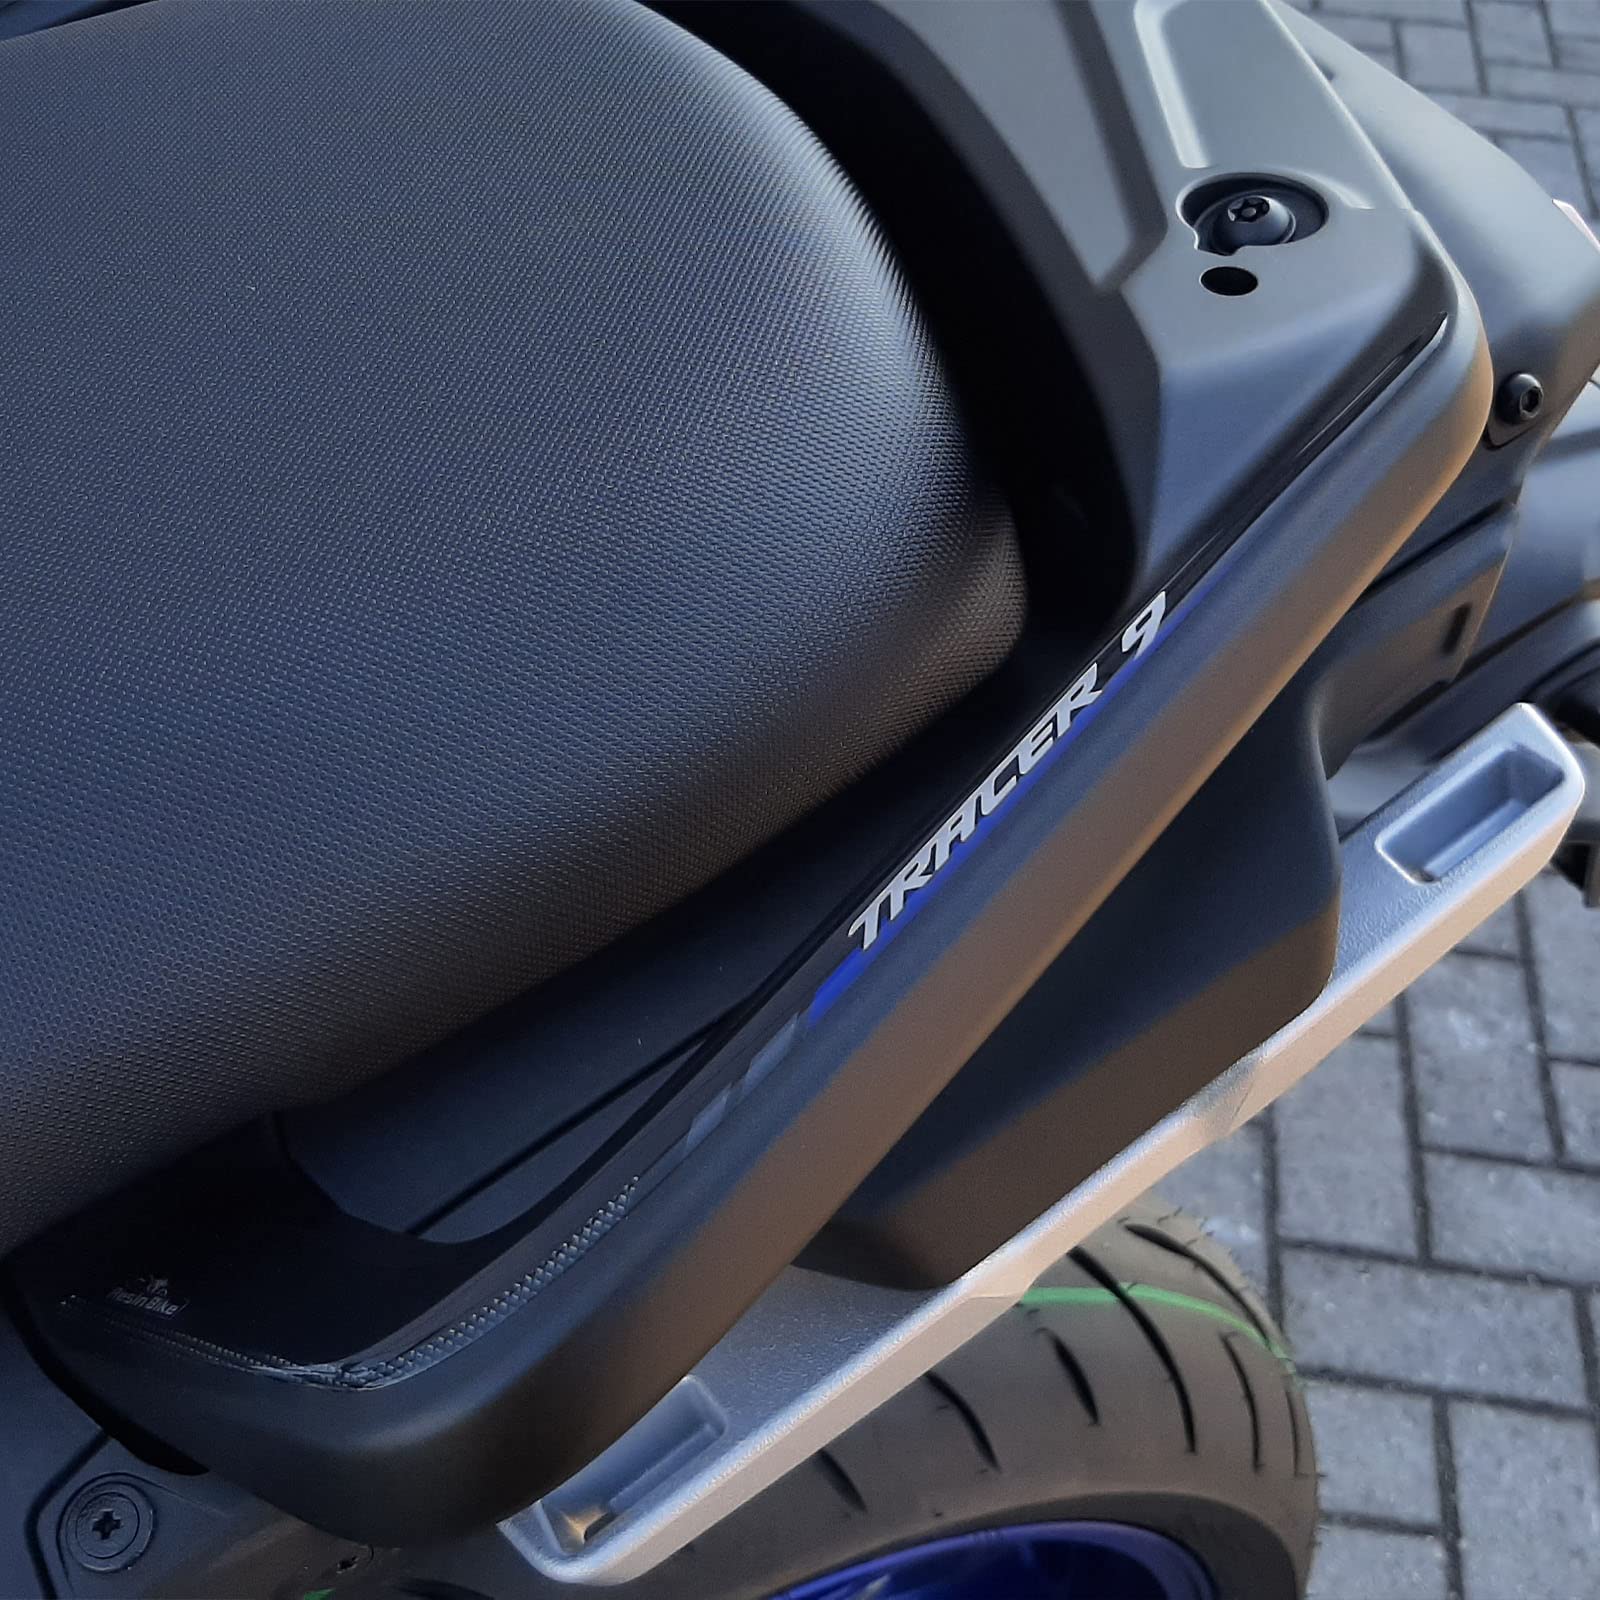 Resin Bike Aufkleber für Motorrad Kompatibel mit Yamaha Tracer 9 2021 Icon Performance. Griffschutz für den Beifahrer Schutz vor Stößen und Kratzern. Paar 3D-Harzklebstoff - Stickers - Made in Italy von Resin Bike